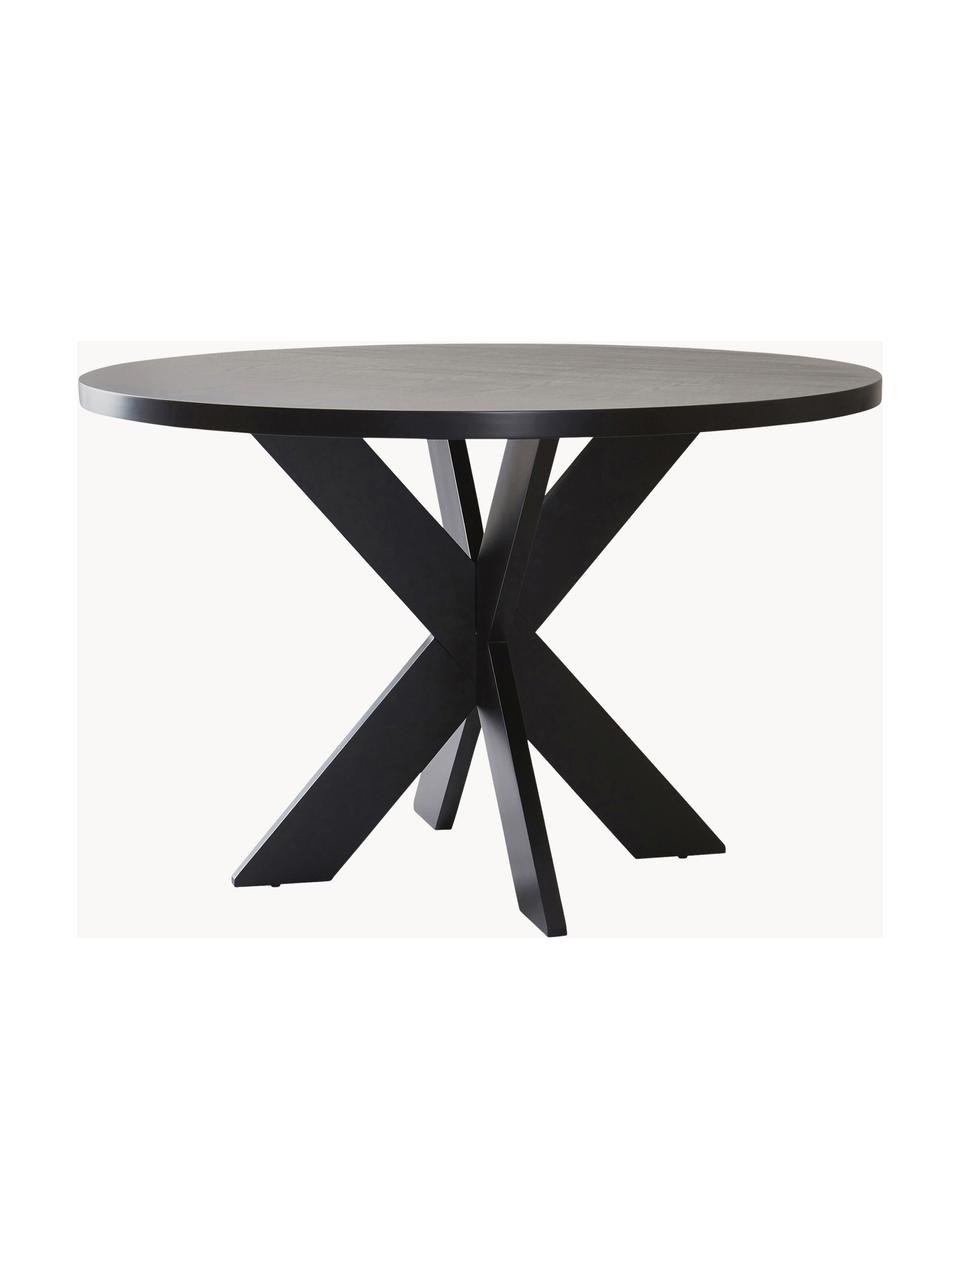 Kulatý dřevěný jídelní stůl Lugnvik, MDF deska (dřevovláknitá deska střední hustoty) potažená linoleem, Černá, Ø 120 cm, V 76 cm